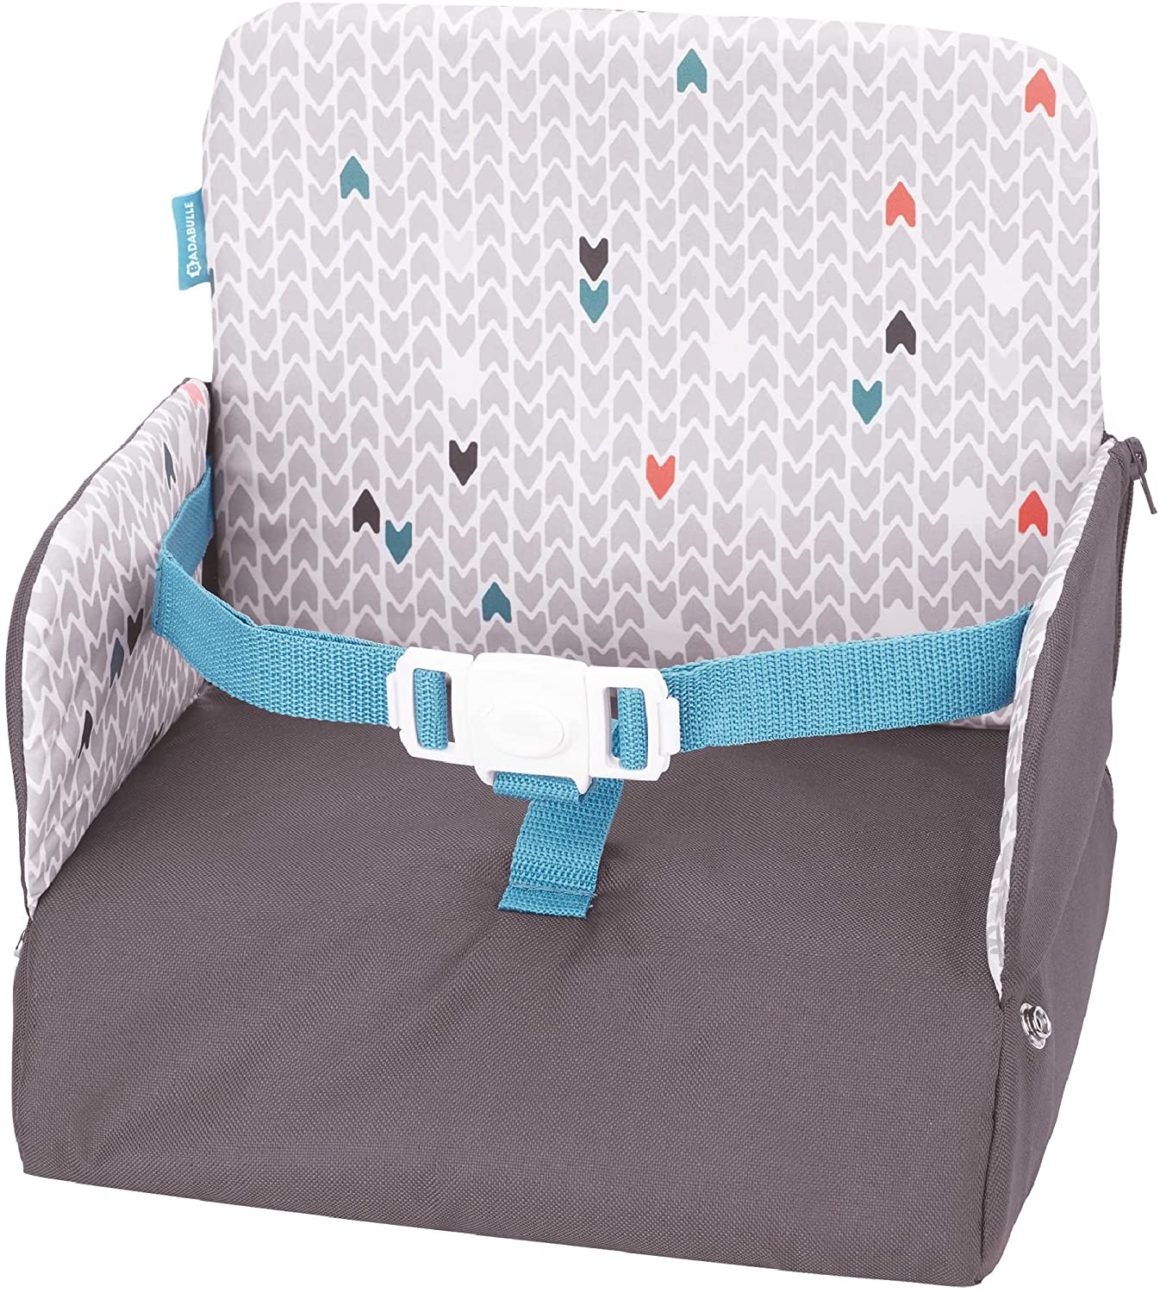 Chaise nomade bébé: comparatif pour bien choisir